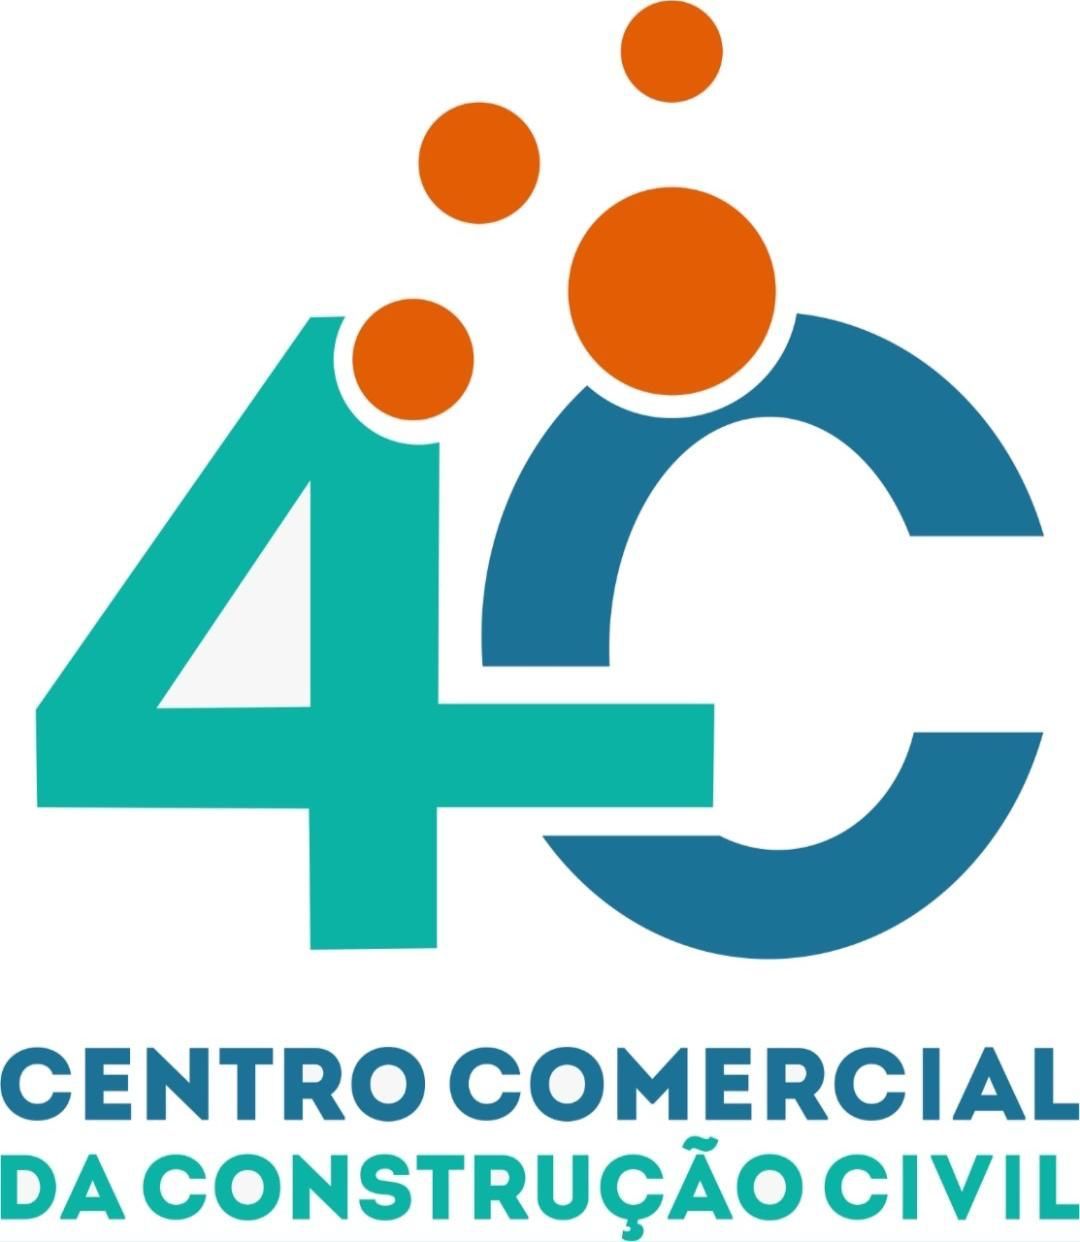 4C Centro Comercial da Construção Civil 